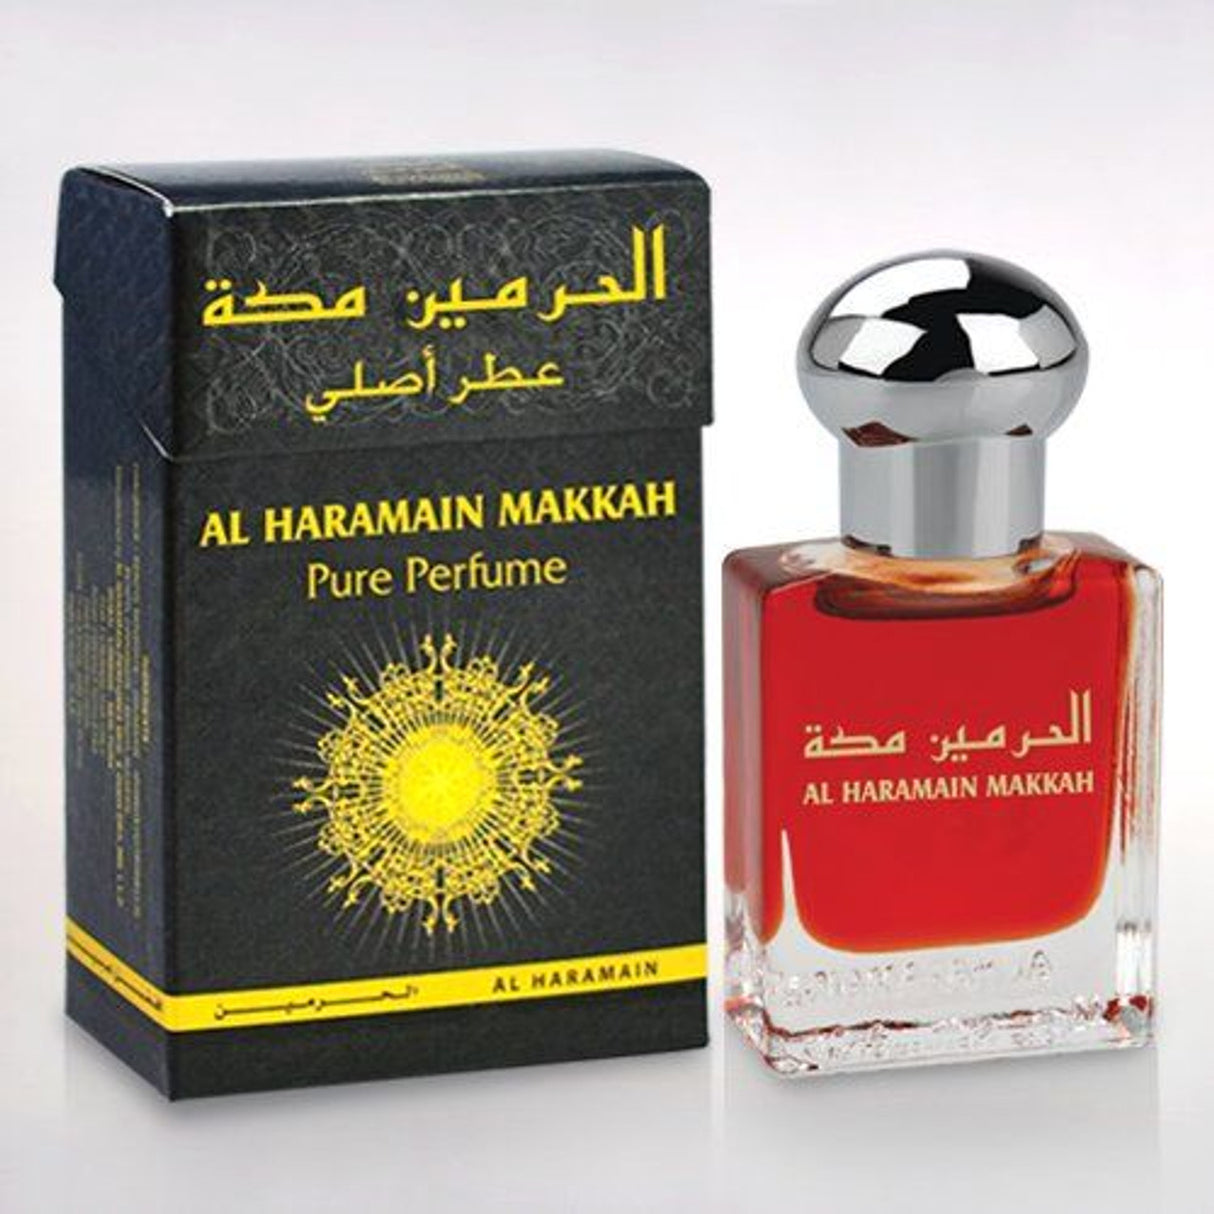 Al Haramain Makkah 15ml